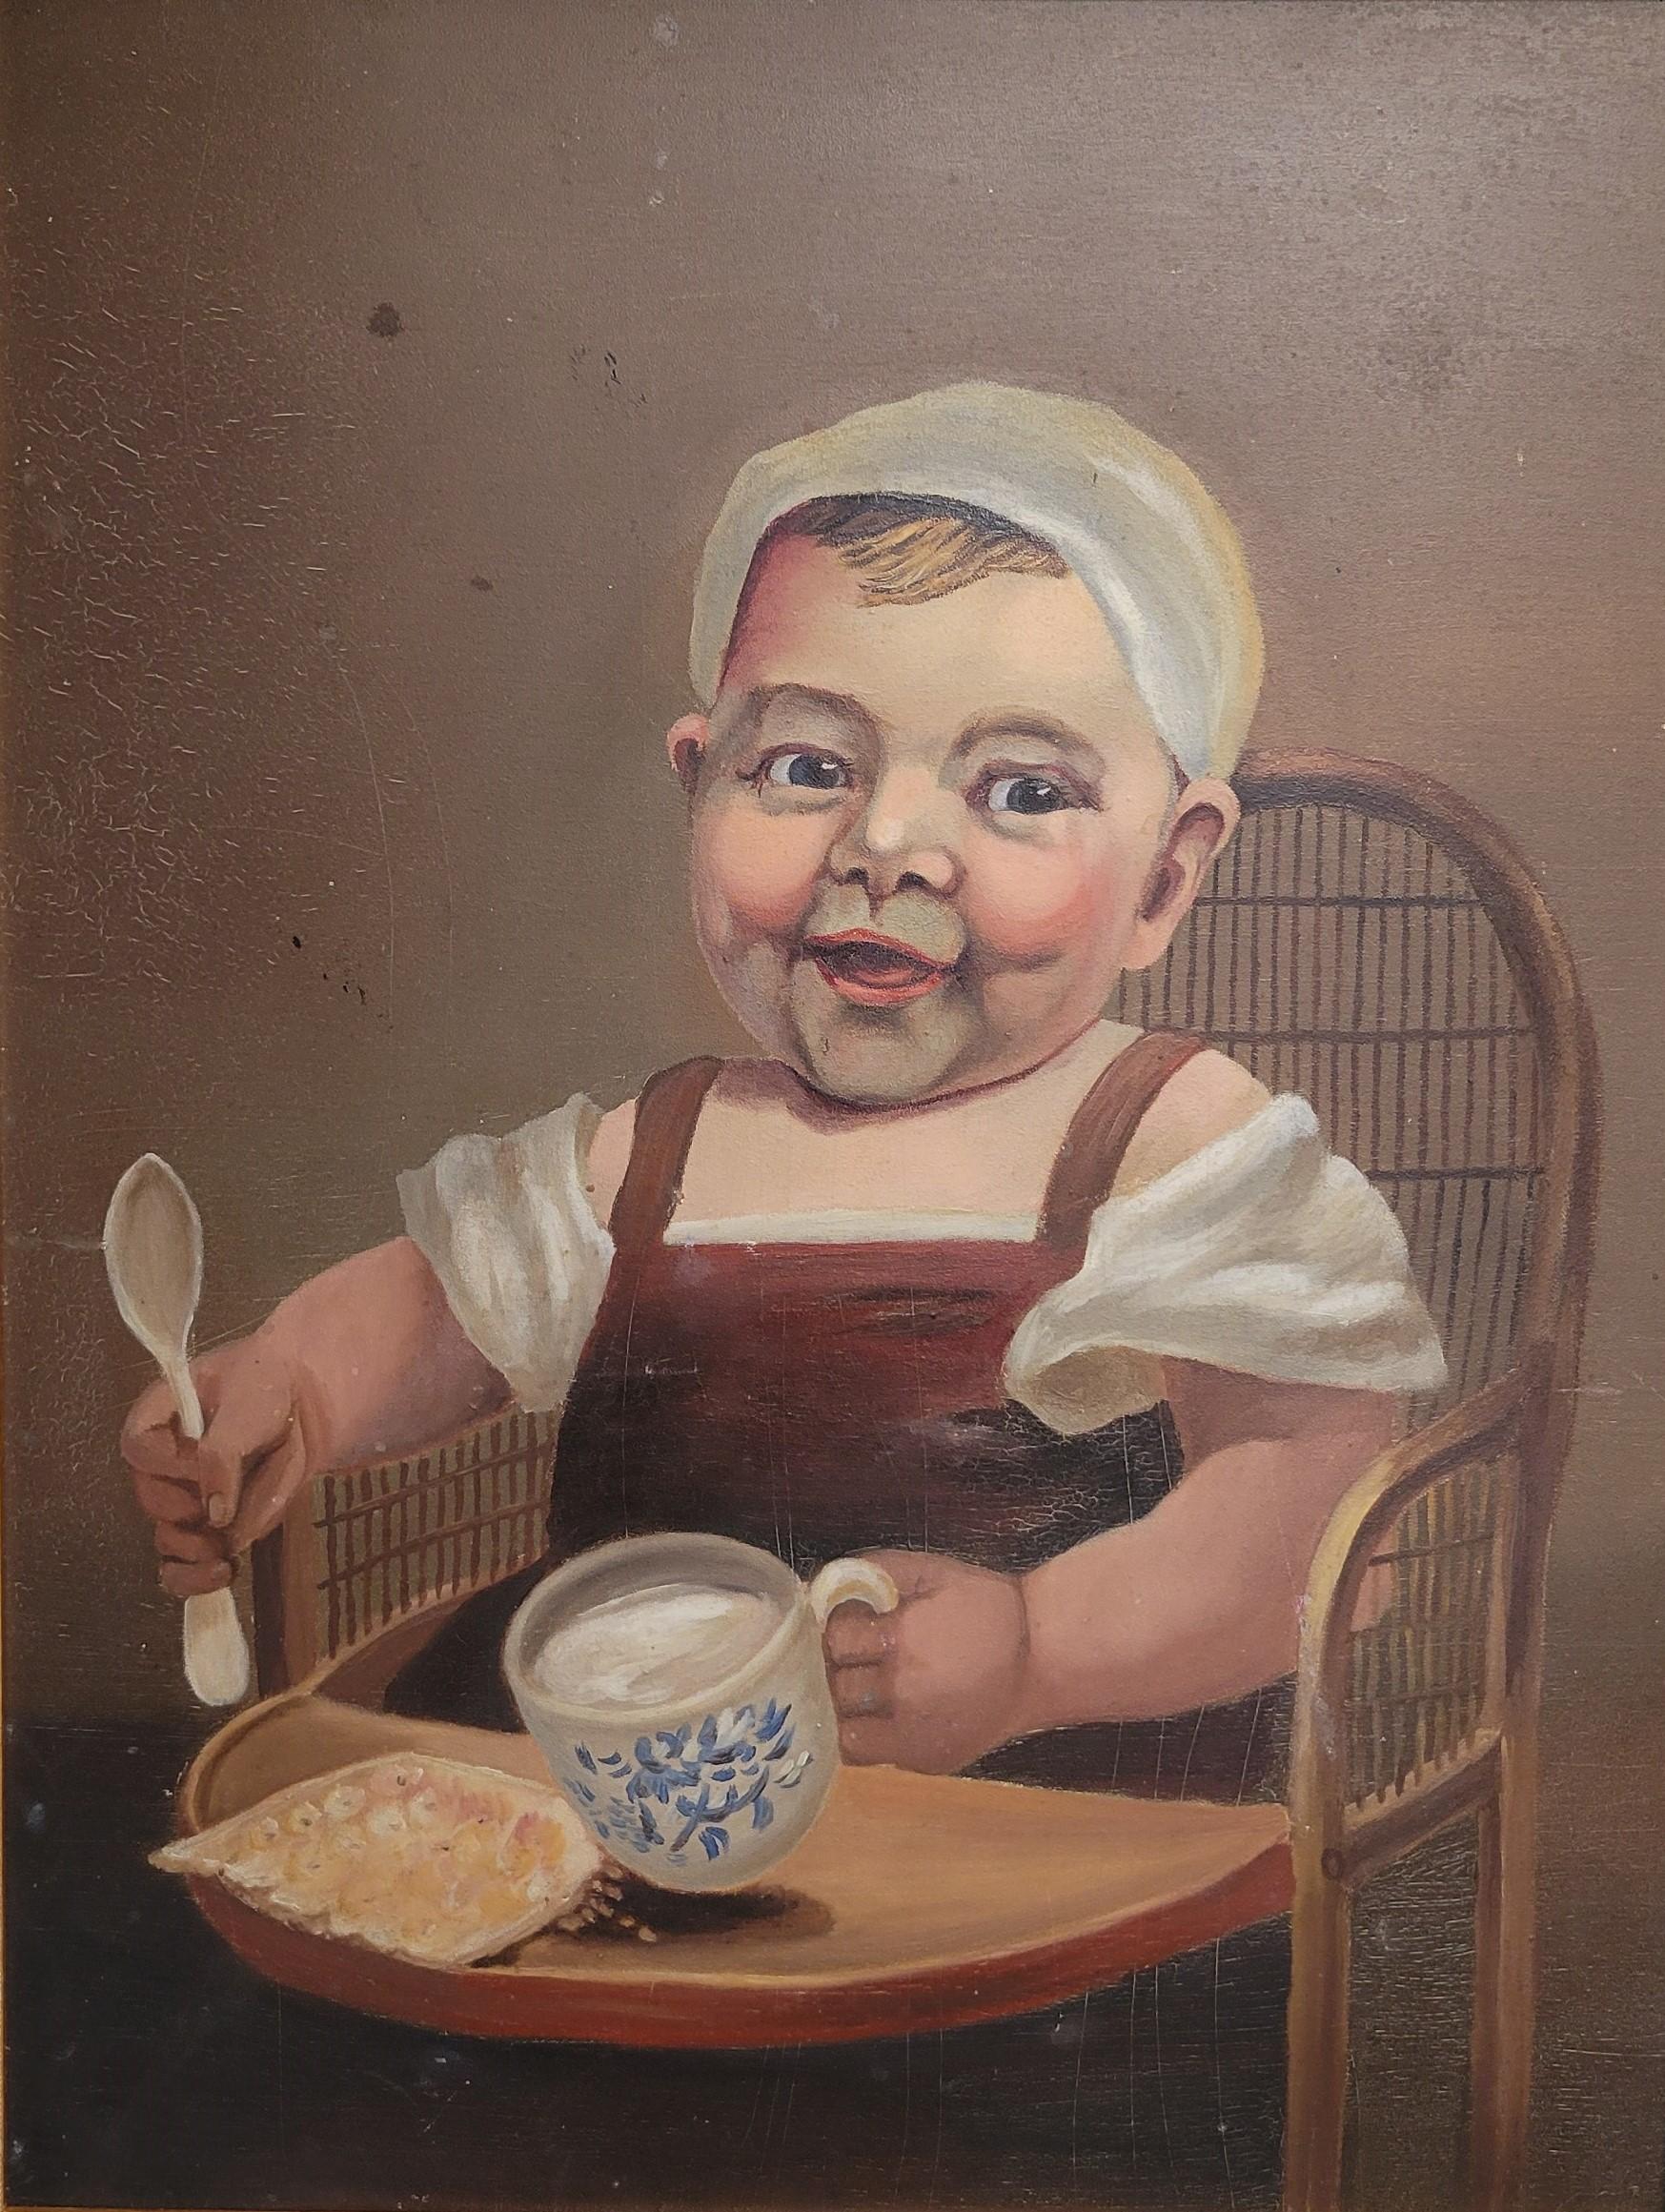 Ein charmantes Vintage-Gemälde in Öl auf Faserplatte, das ein kleines Kind mit einer blau-weißen Tasse und einem Stück Brot (?) zeigt. Bemalt in warmen Braun-, Rosa-, Kastanienbraun- und Weißtönen. Oberflächenabschürfungen und Kratzer sind auf grobe